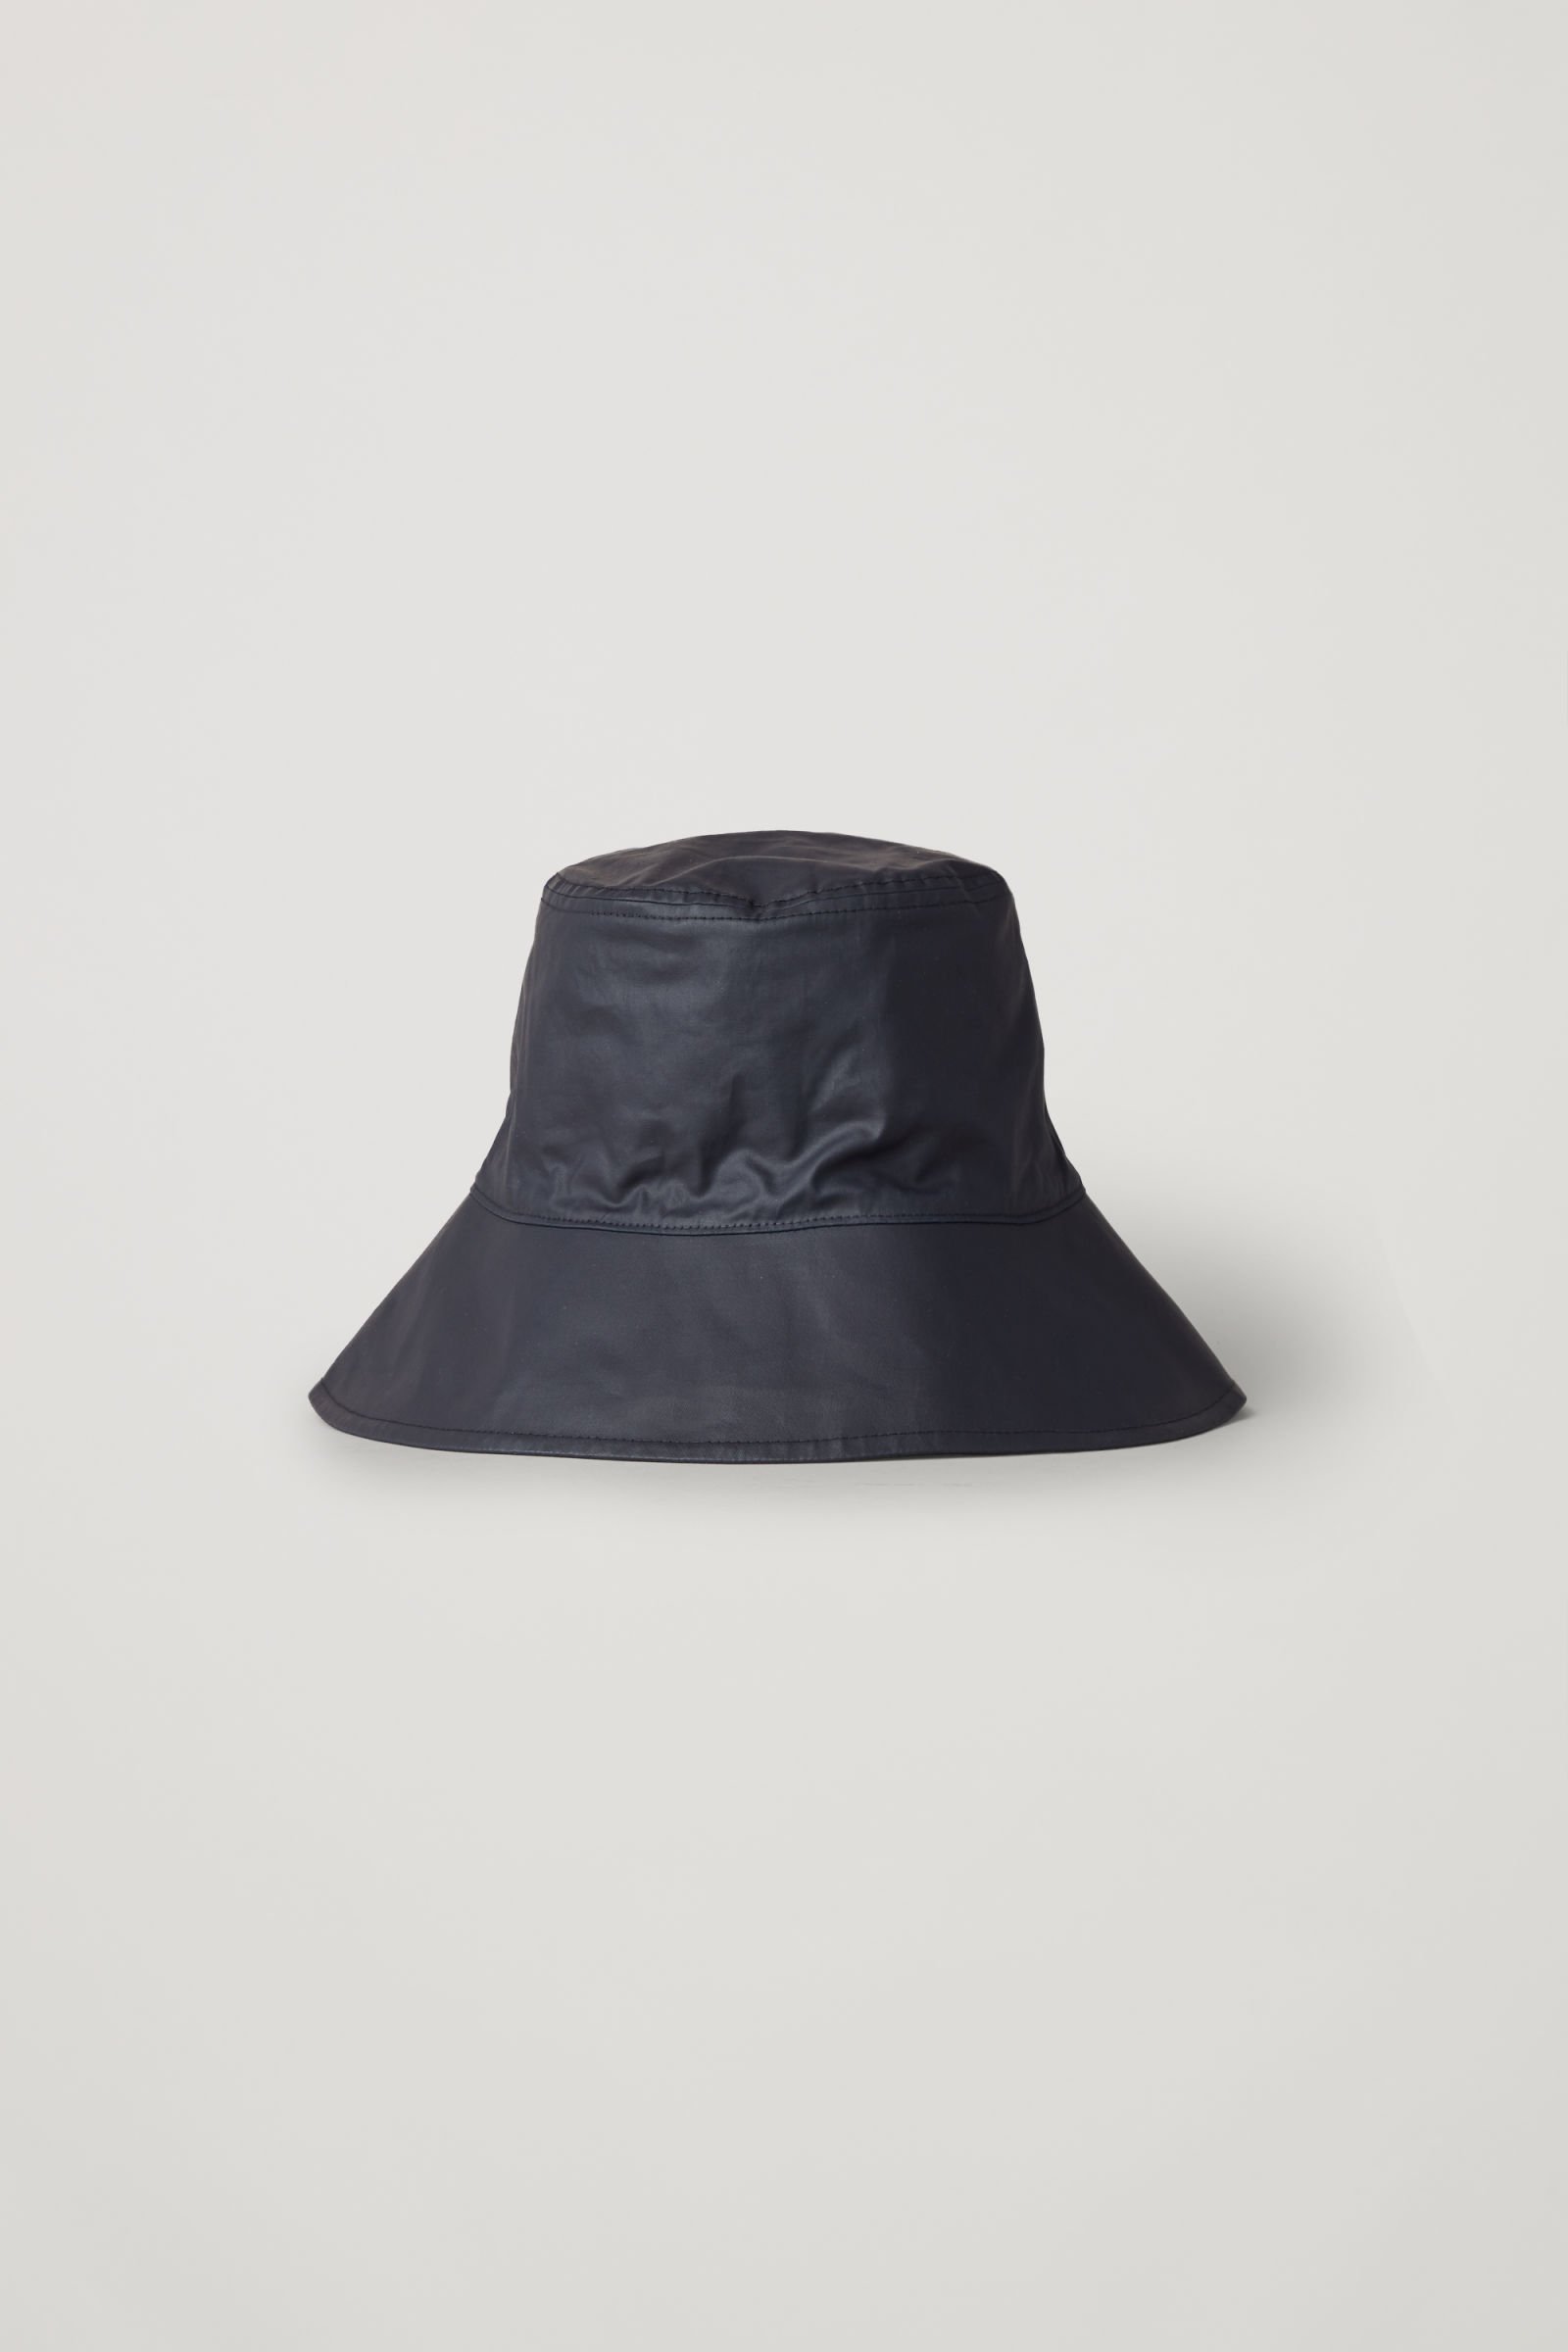 COS Cotton Bucket Hat in navy | Endource